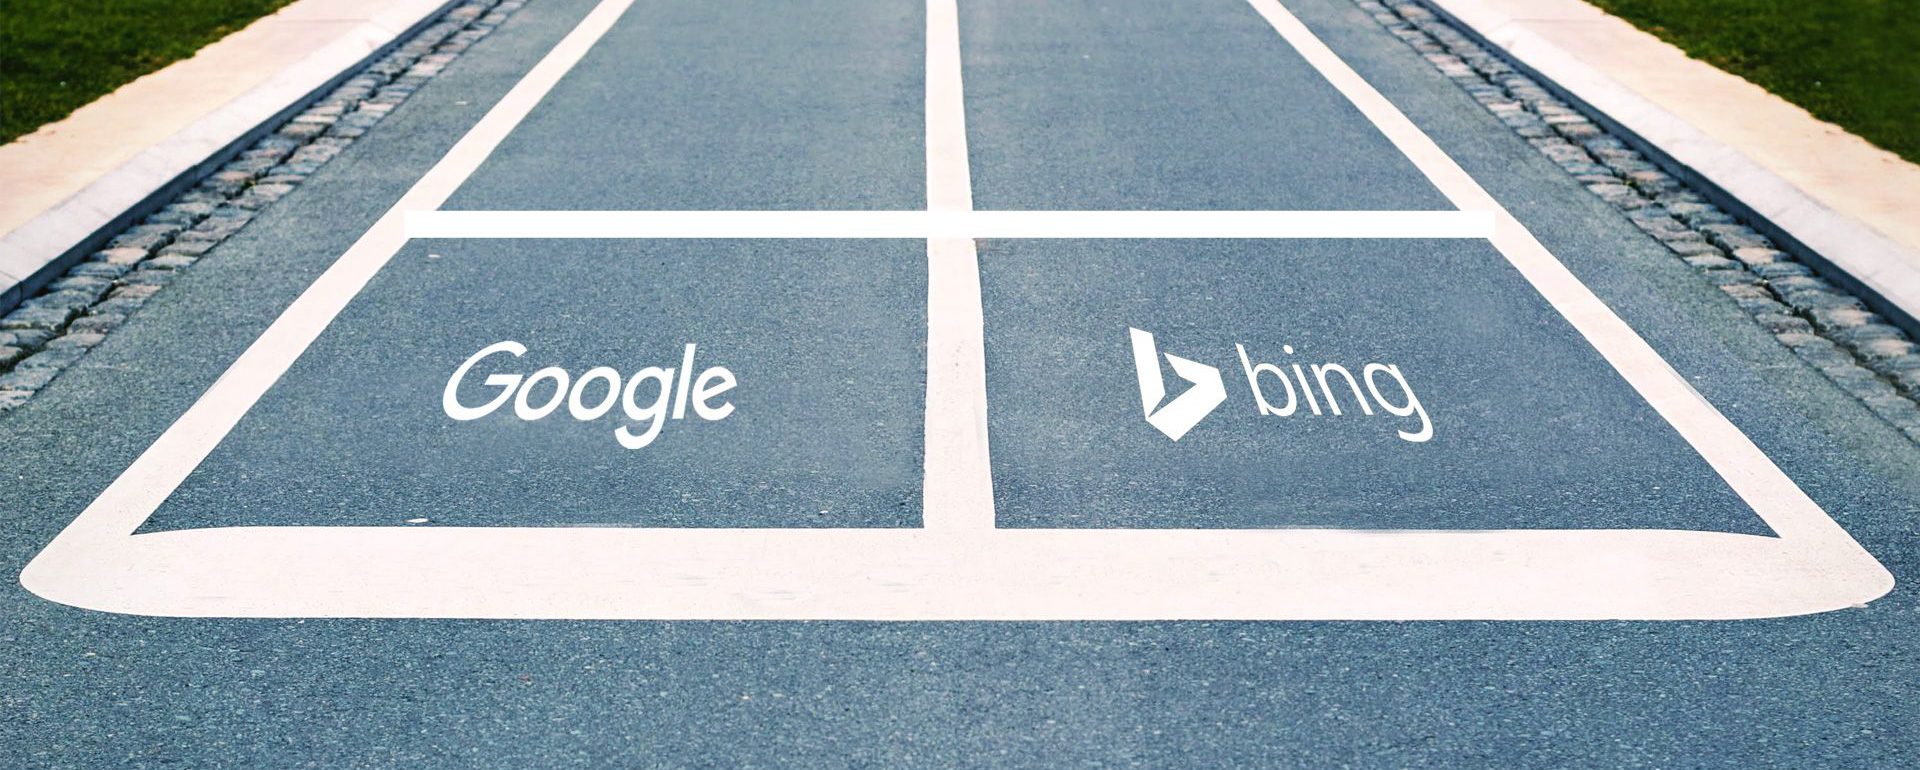 Google AdWords vs Bing Ads